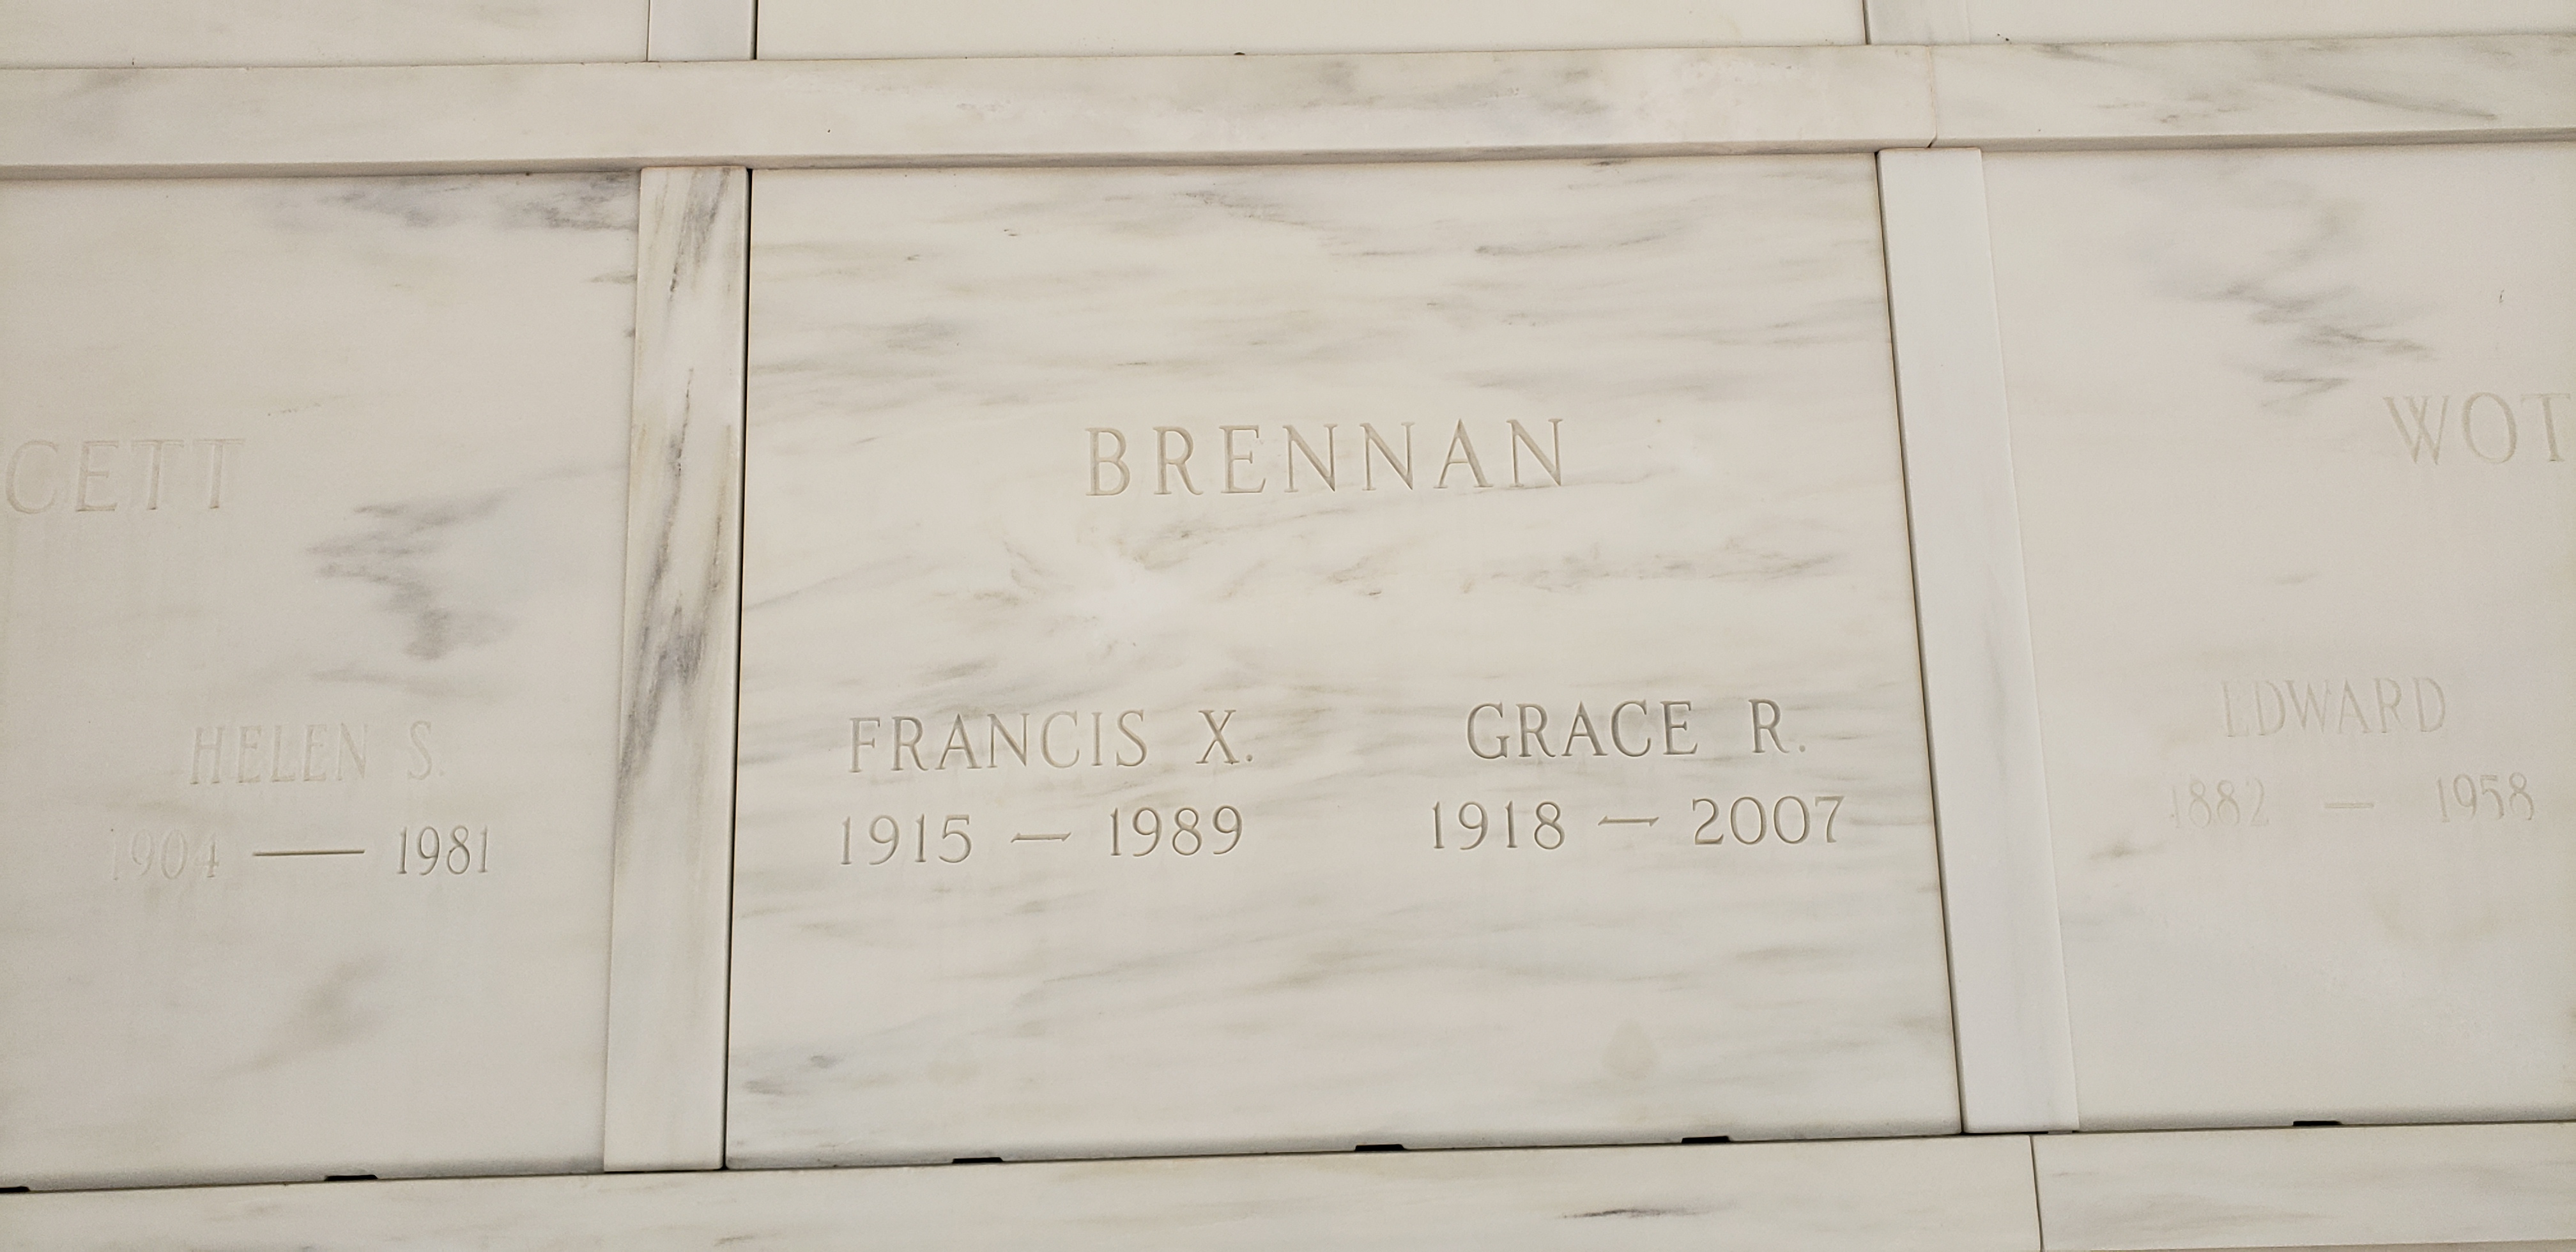 Francis X Brennan